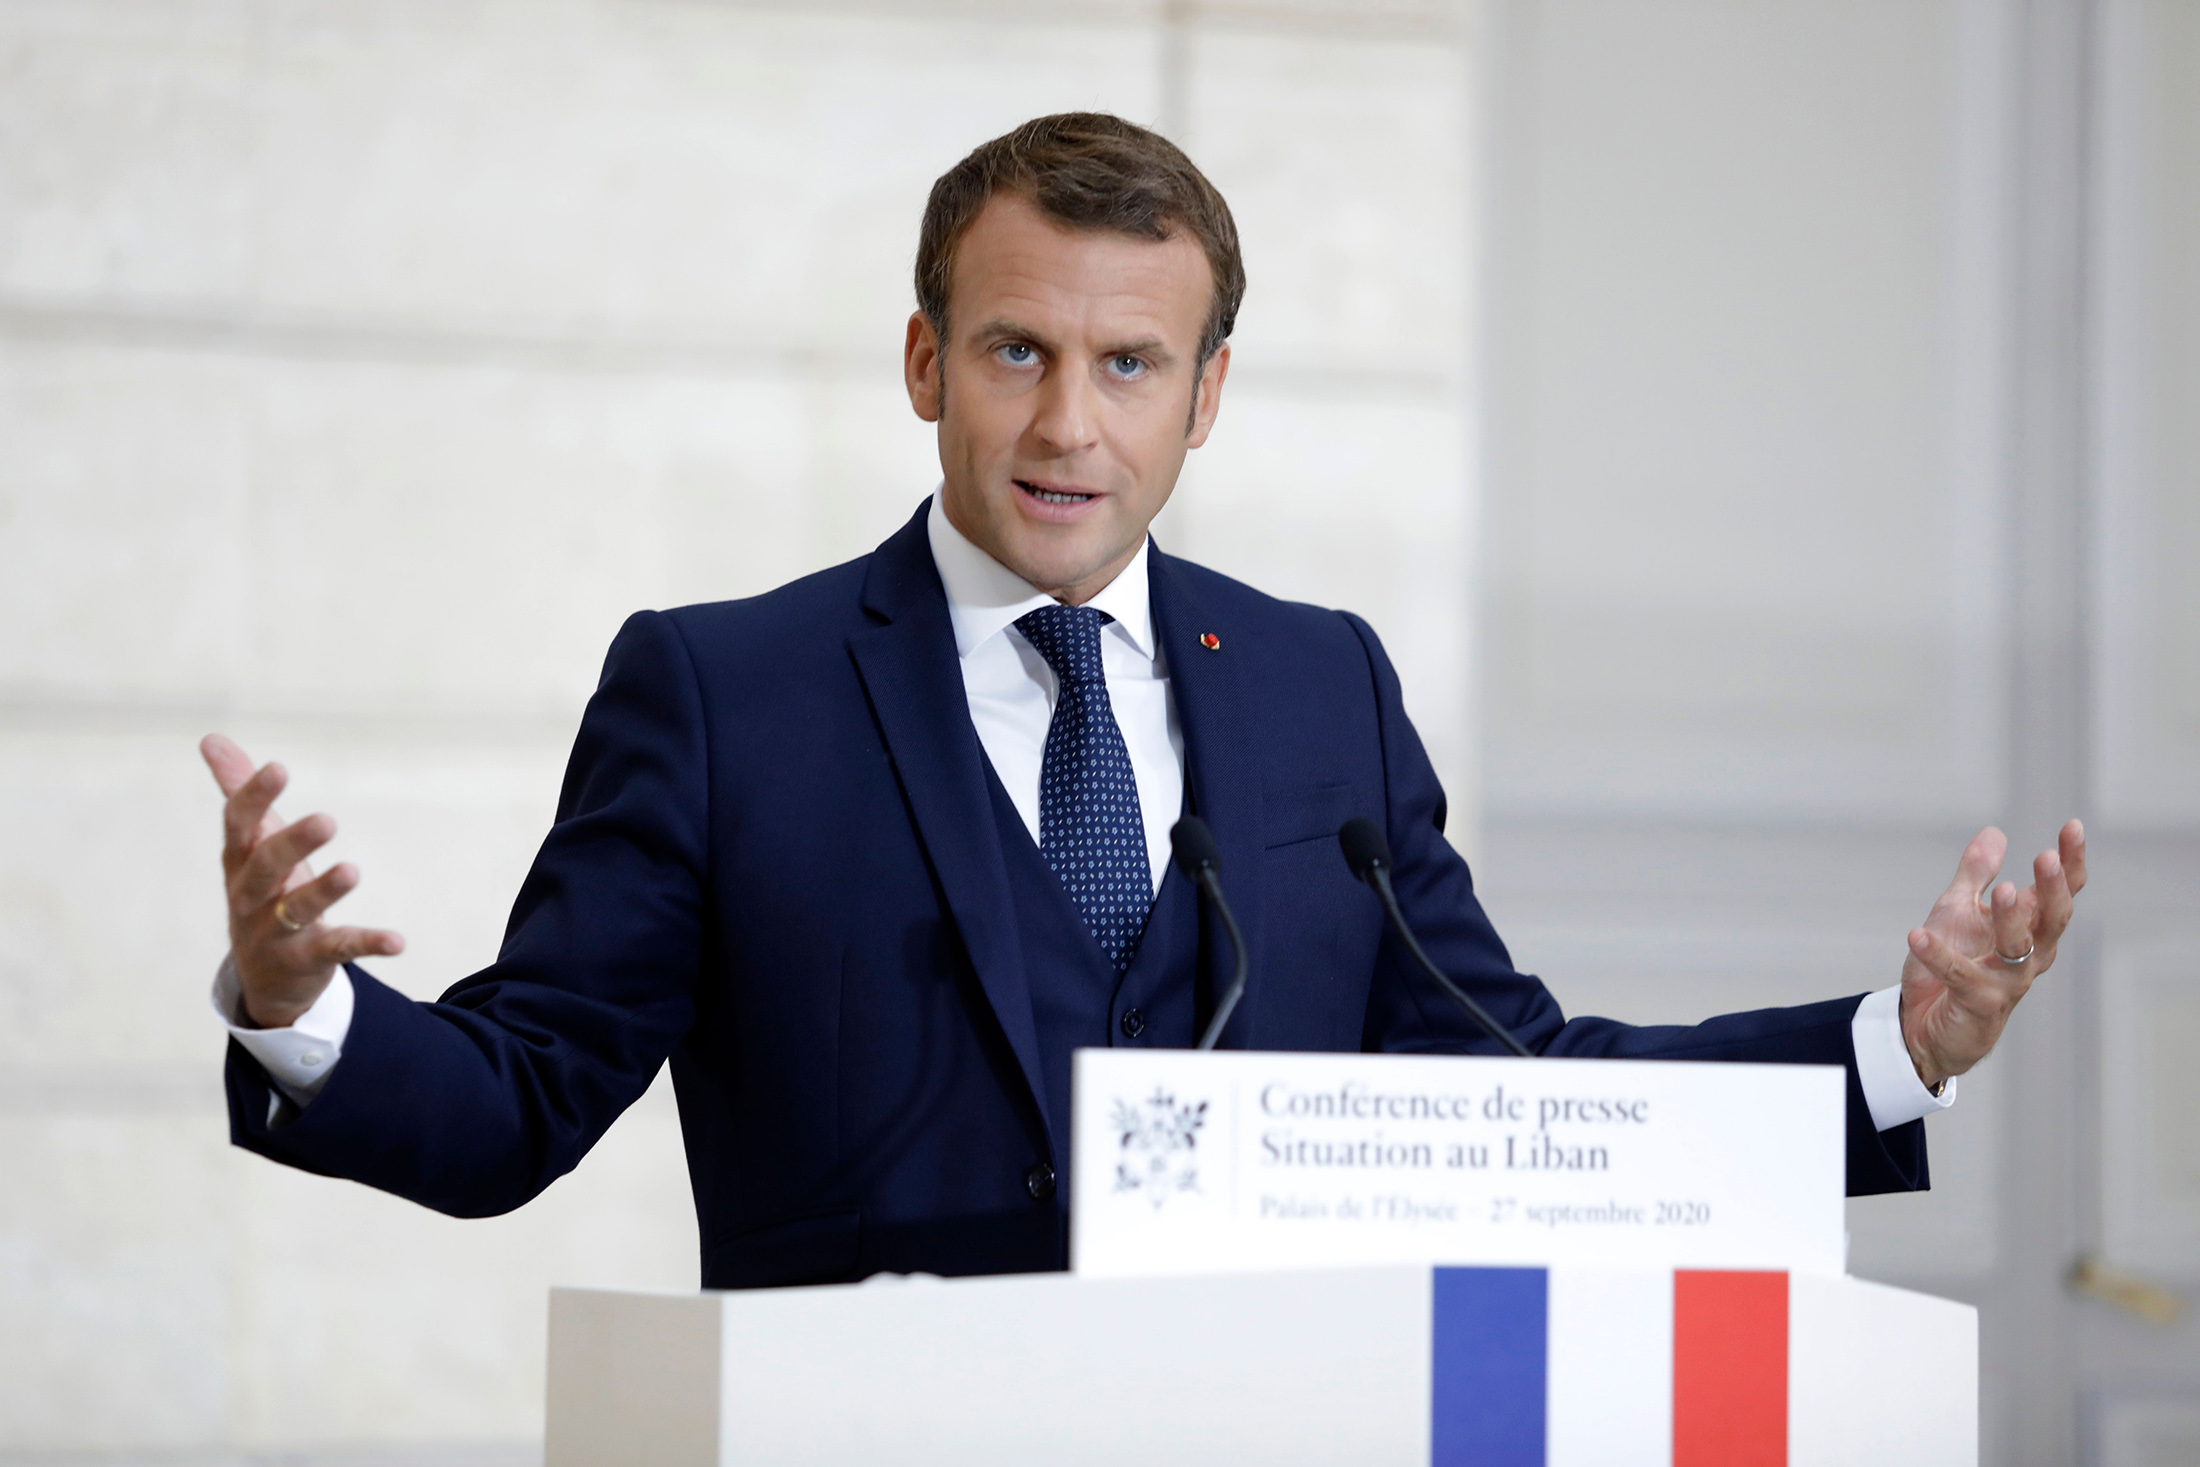 Emmanuel Macron speaks during a press conference in Paris, France, on Sept. 27.